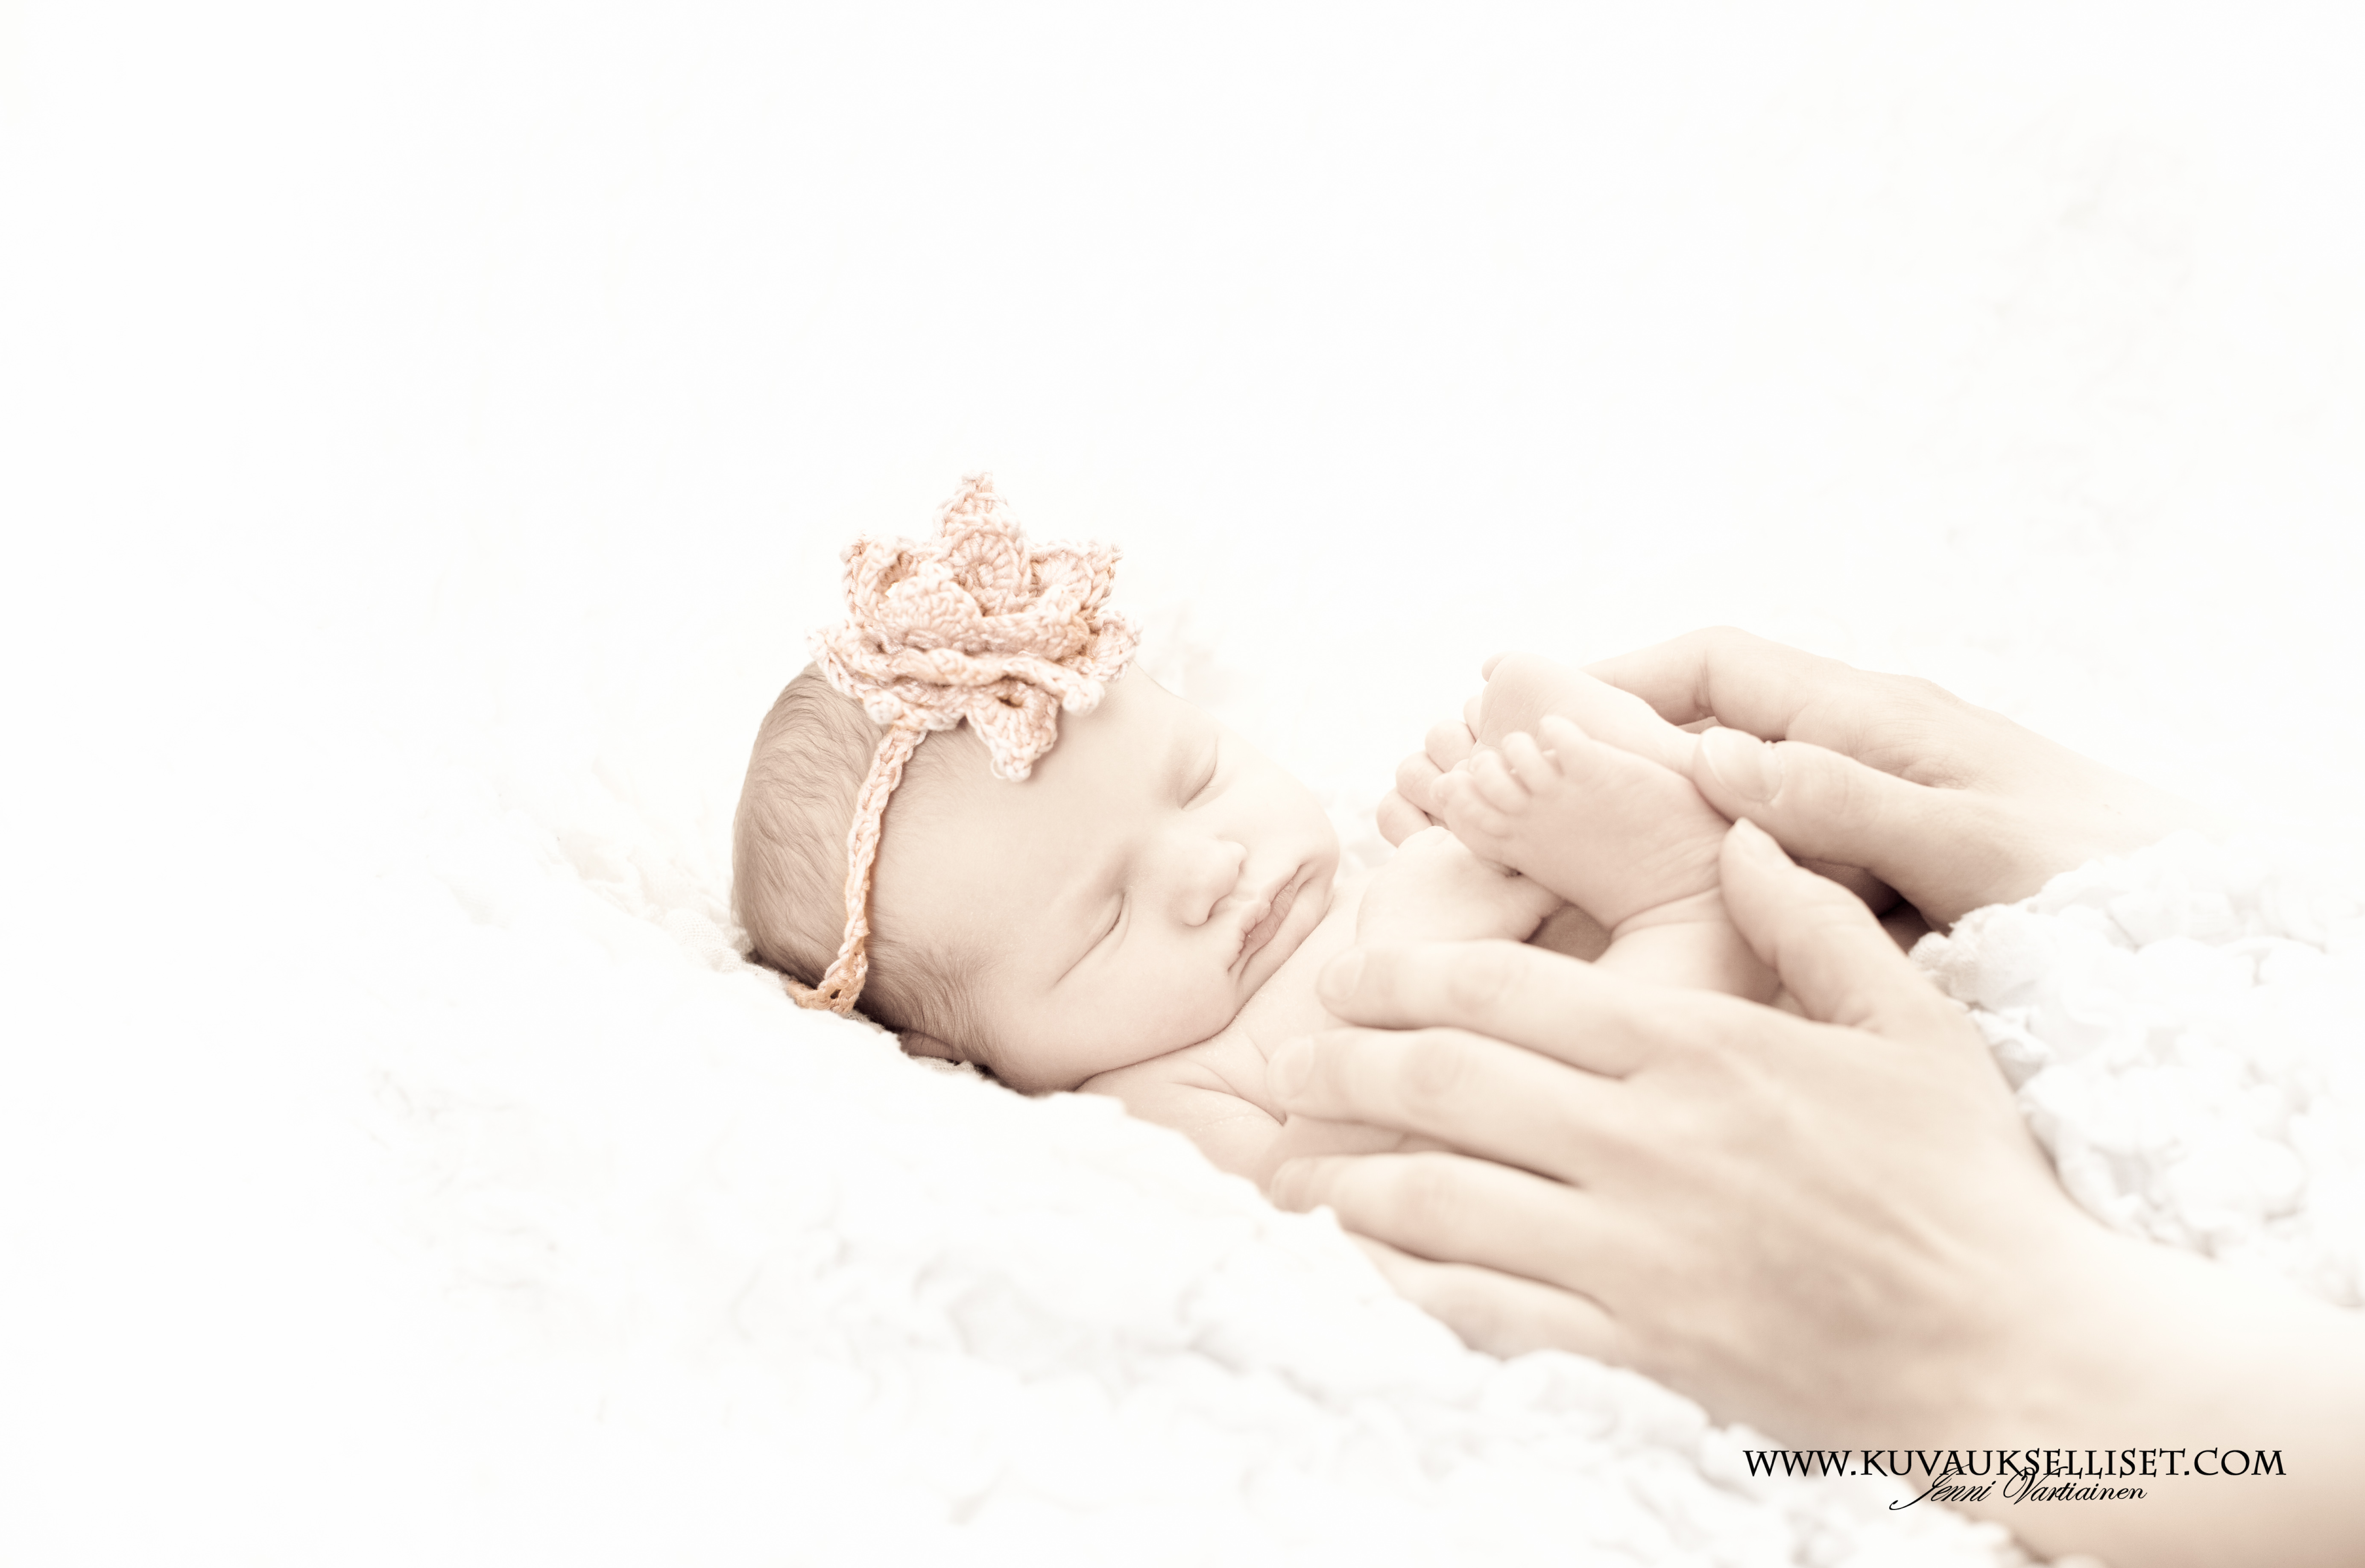 2014.4.8 vauvakuvaus vastasyntyneen kuvaus studiokuvaus 3